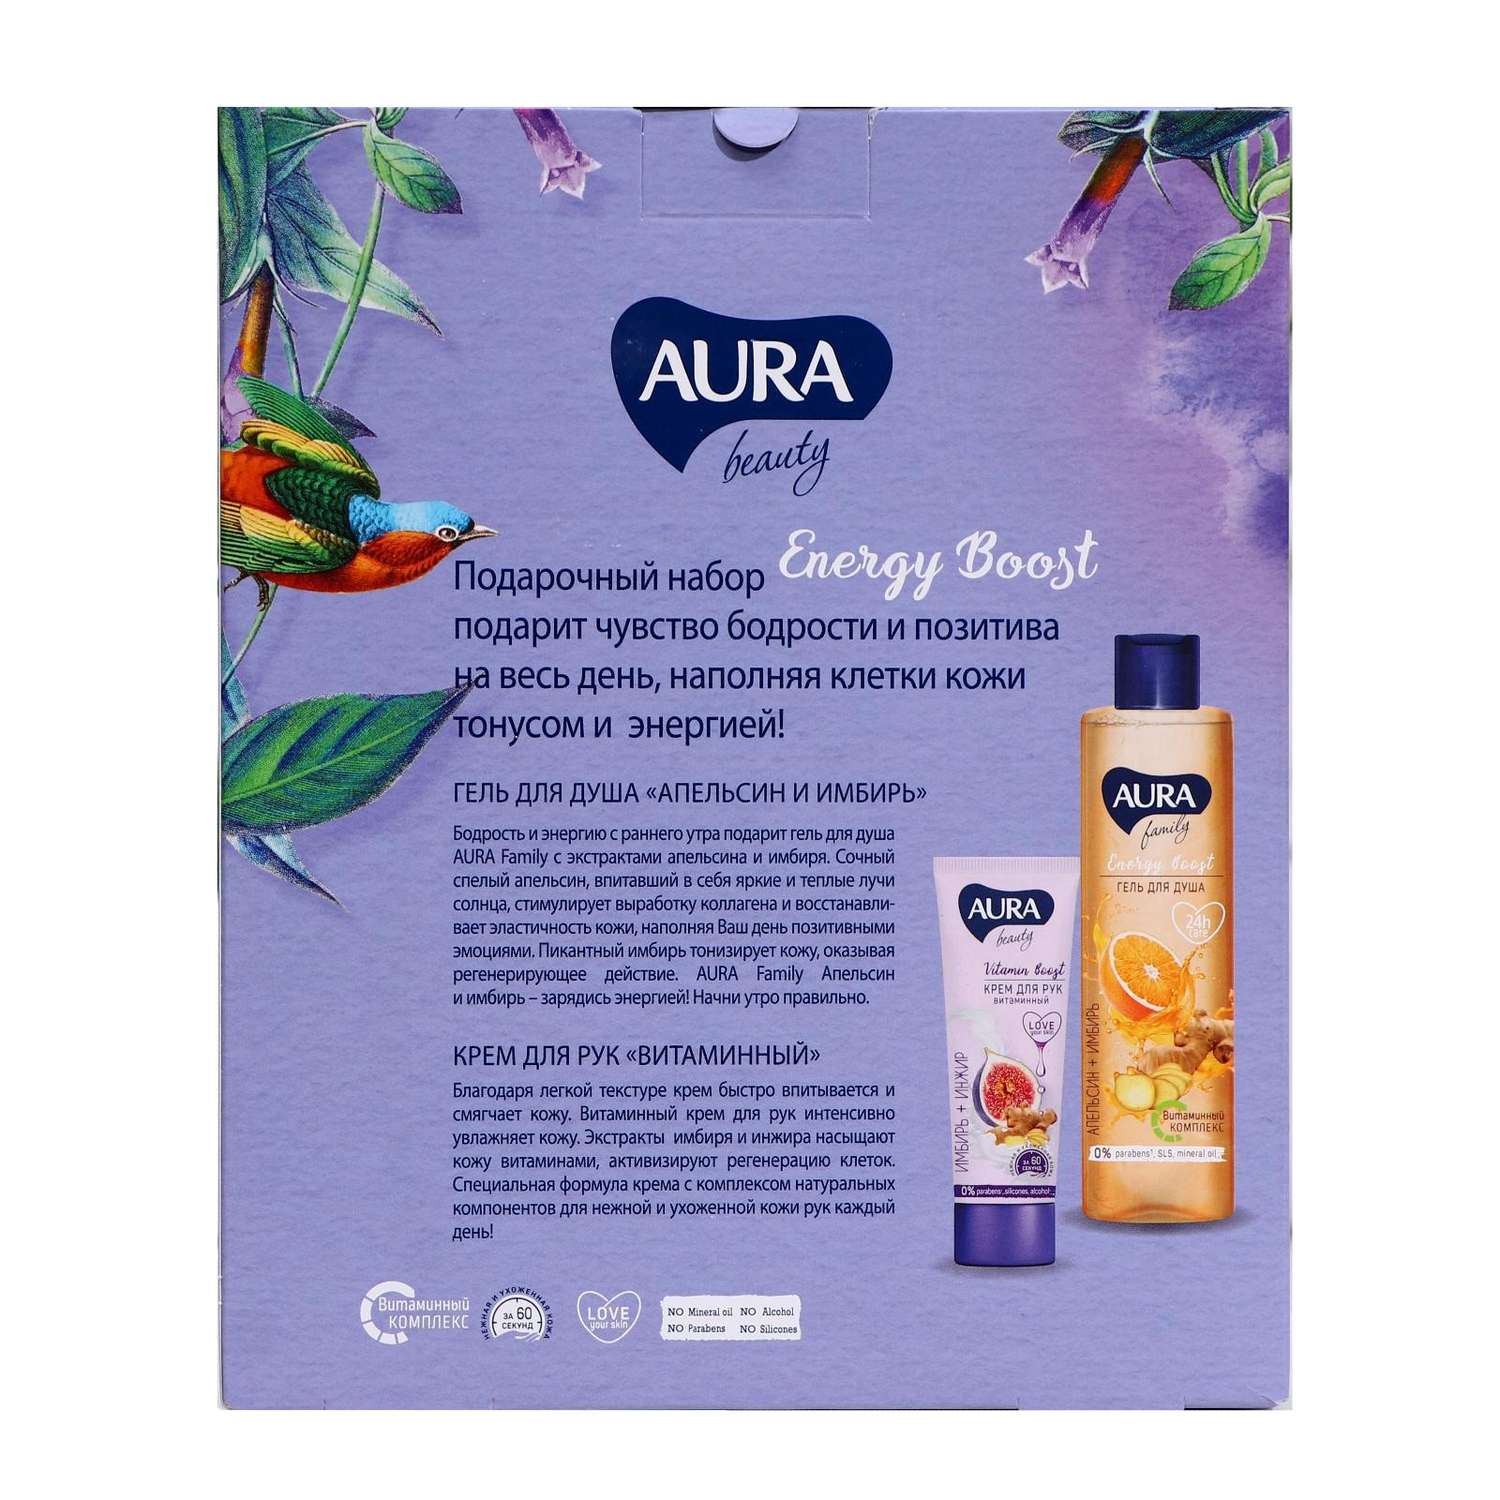 Подарочный набор AURA Beaty Energy Boost Гель для душа Апельсин и имбирь 250 мл+Крем для рук Витаминный 75 мл - фото 5